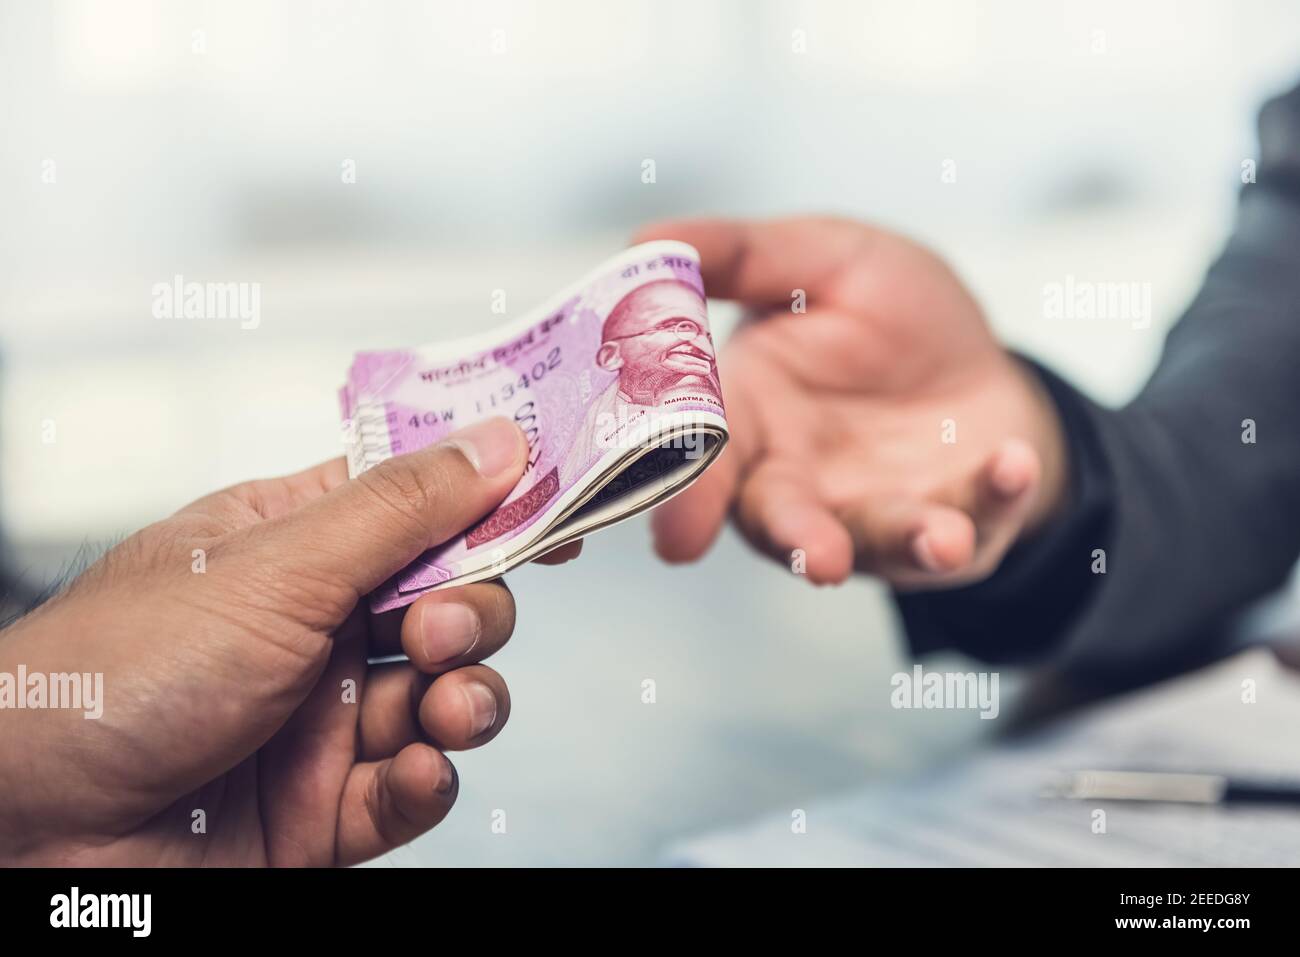 Homme d'affaires donnant de l'argent, monnaie de roupie indienne, au partenaire hs - paiement, prêt et corruption concept Banque D'Images